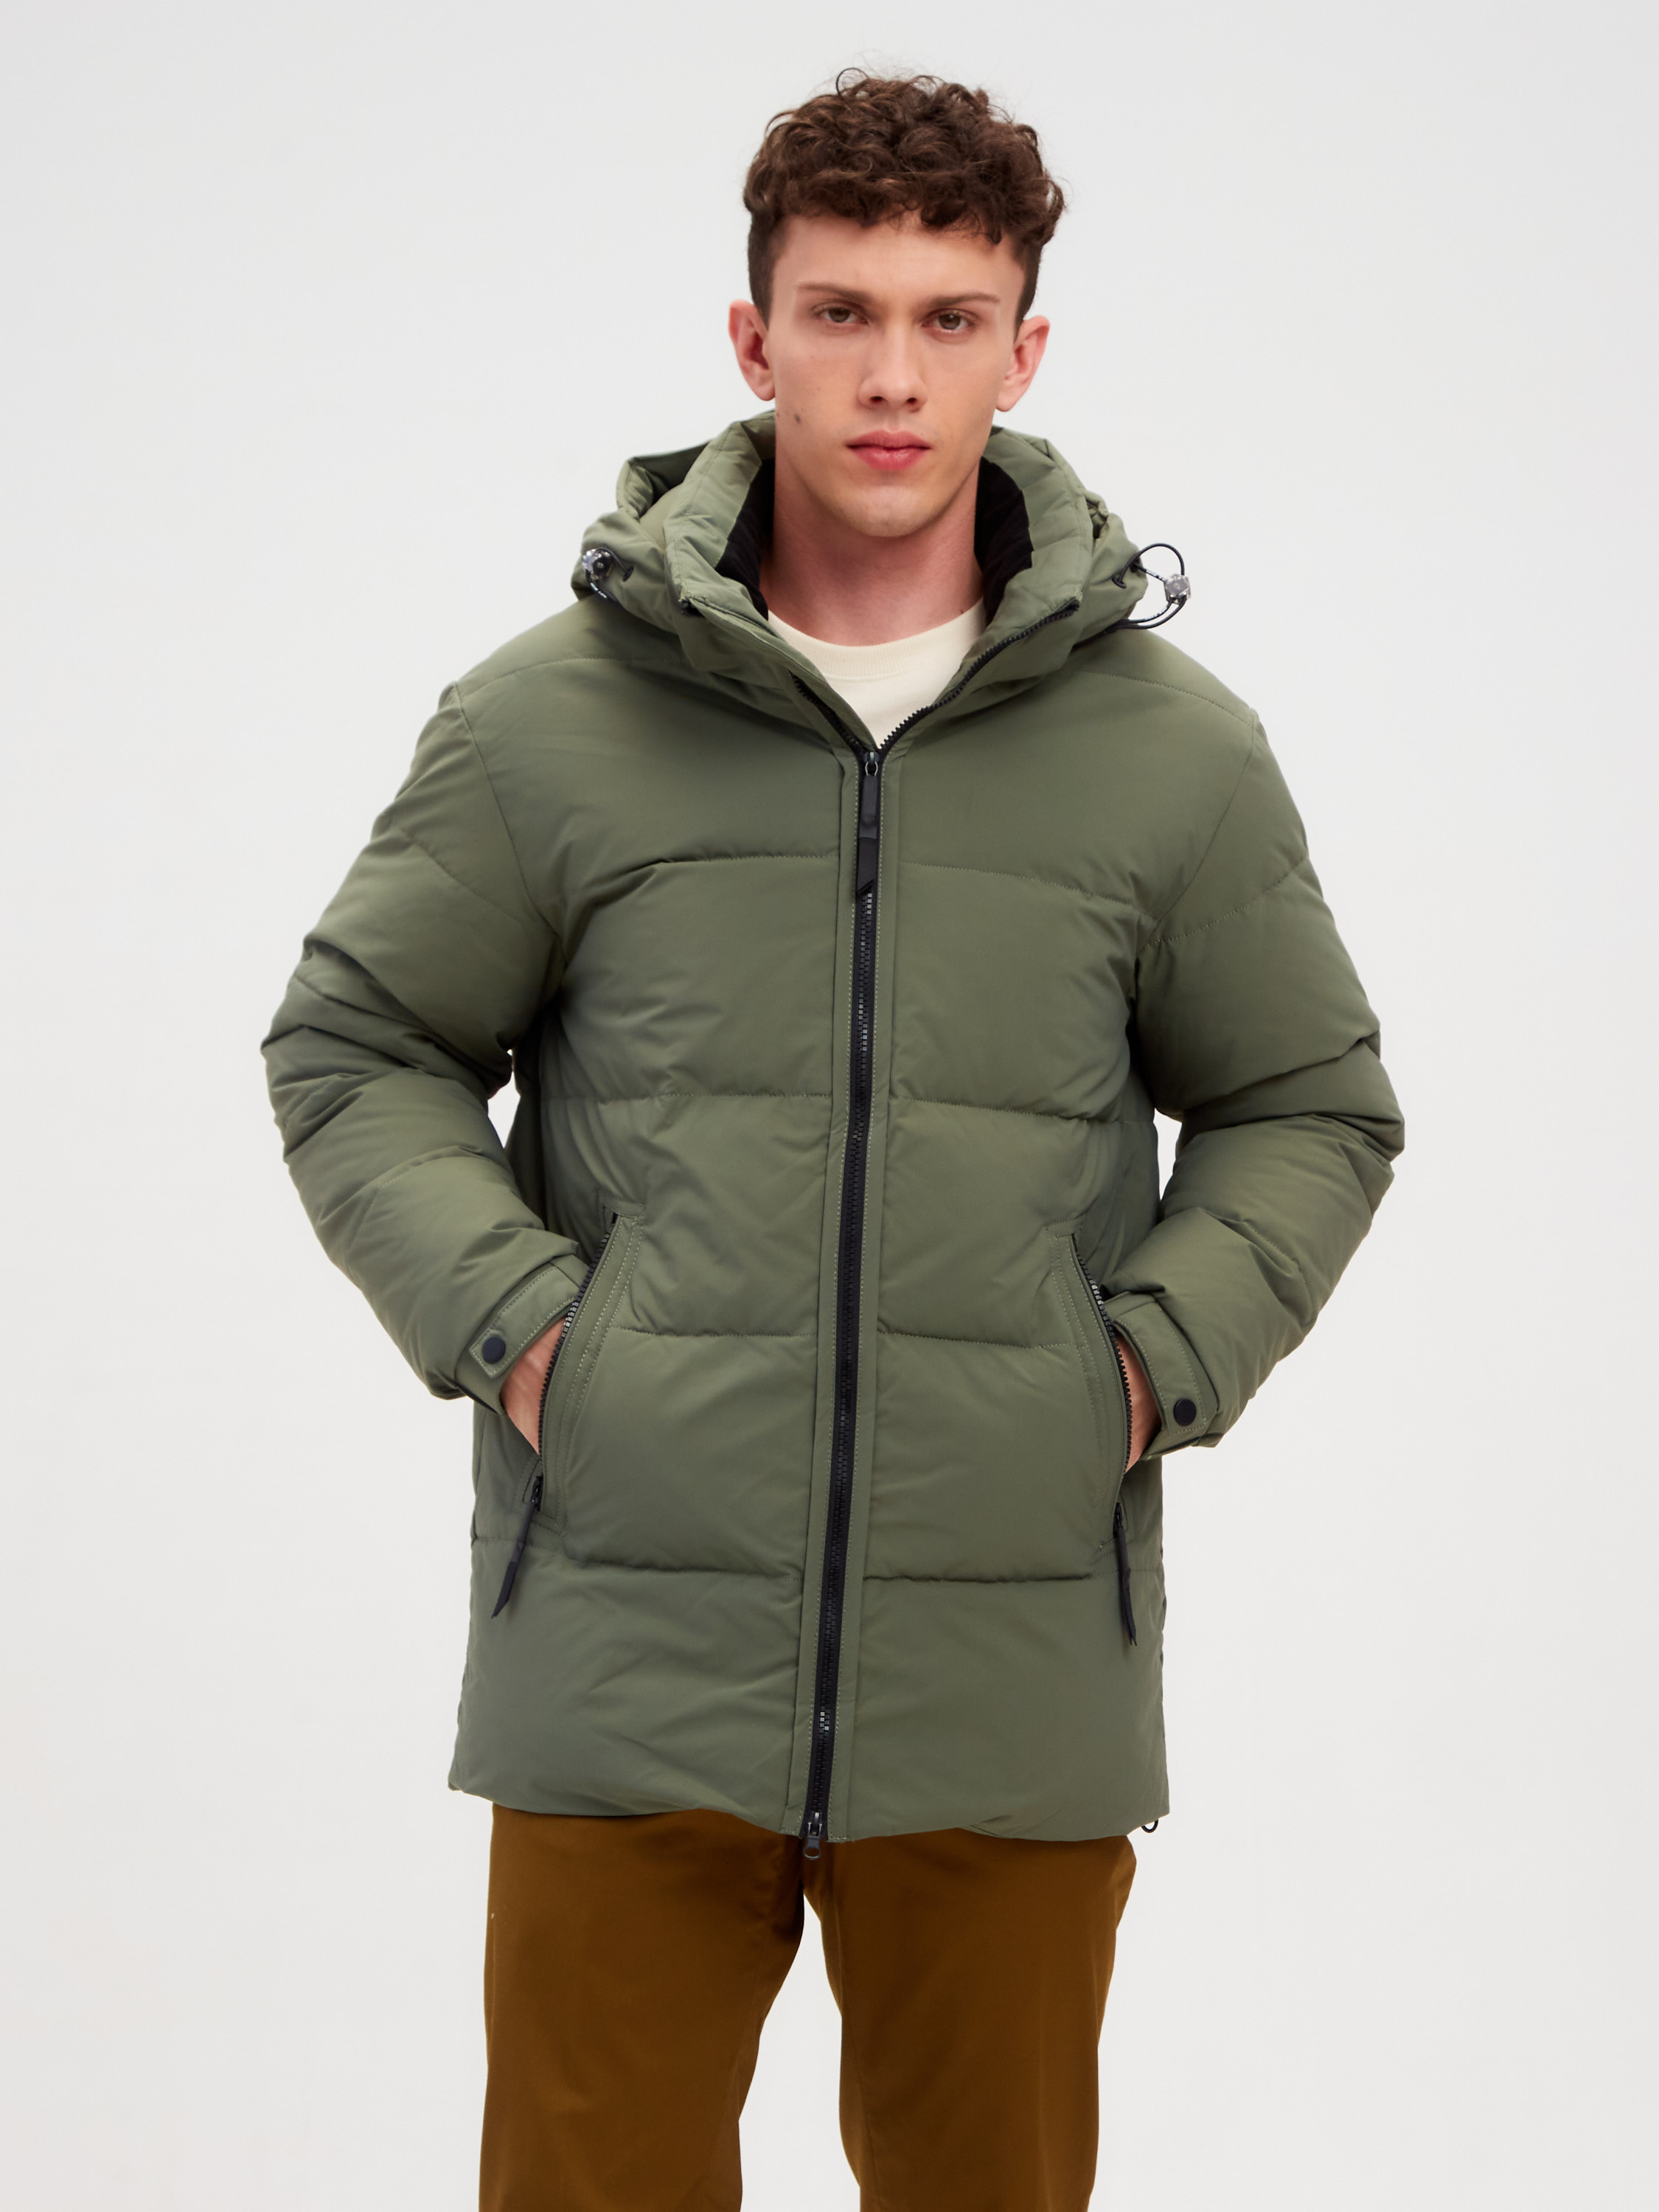 Зимняя куртка мужская GRIZMAN 64397 зеленая 56 RU